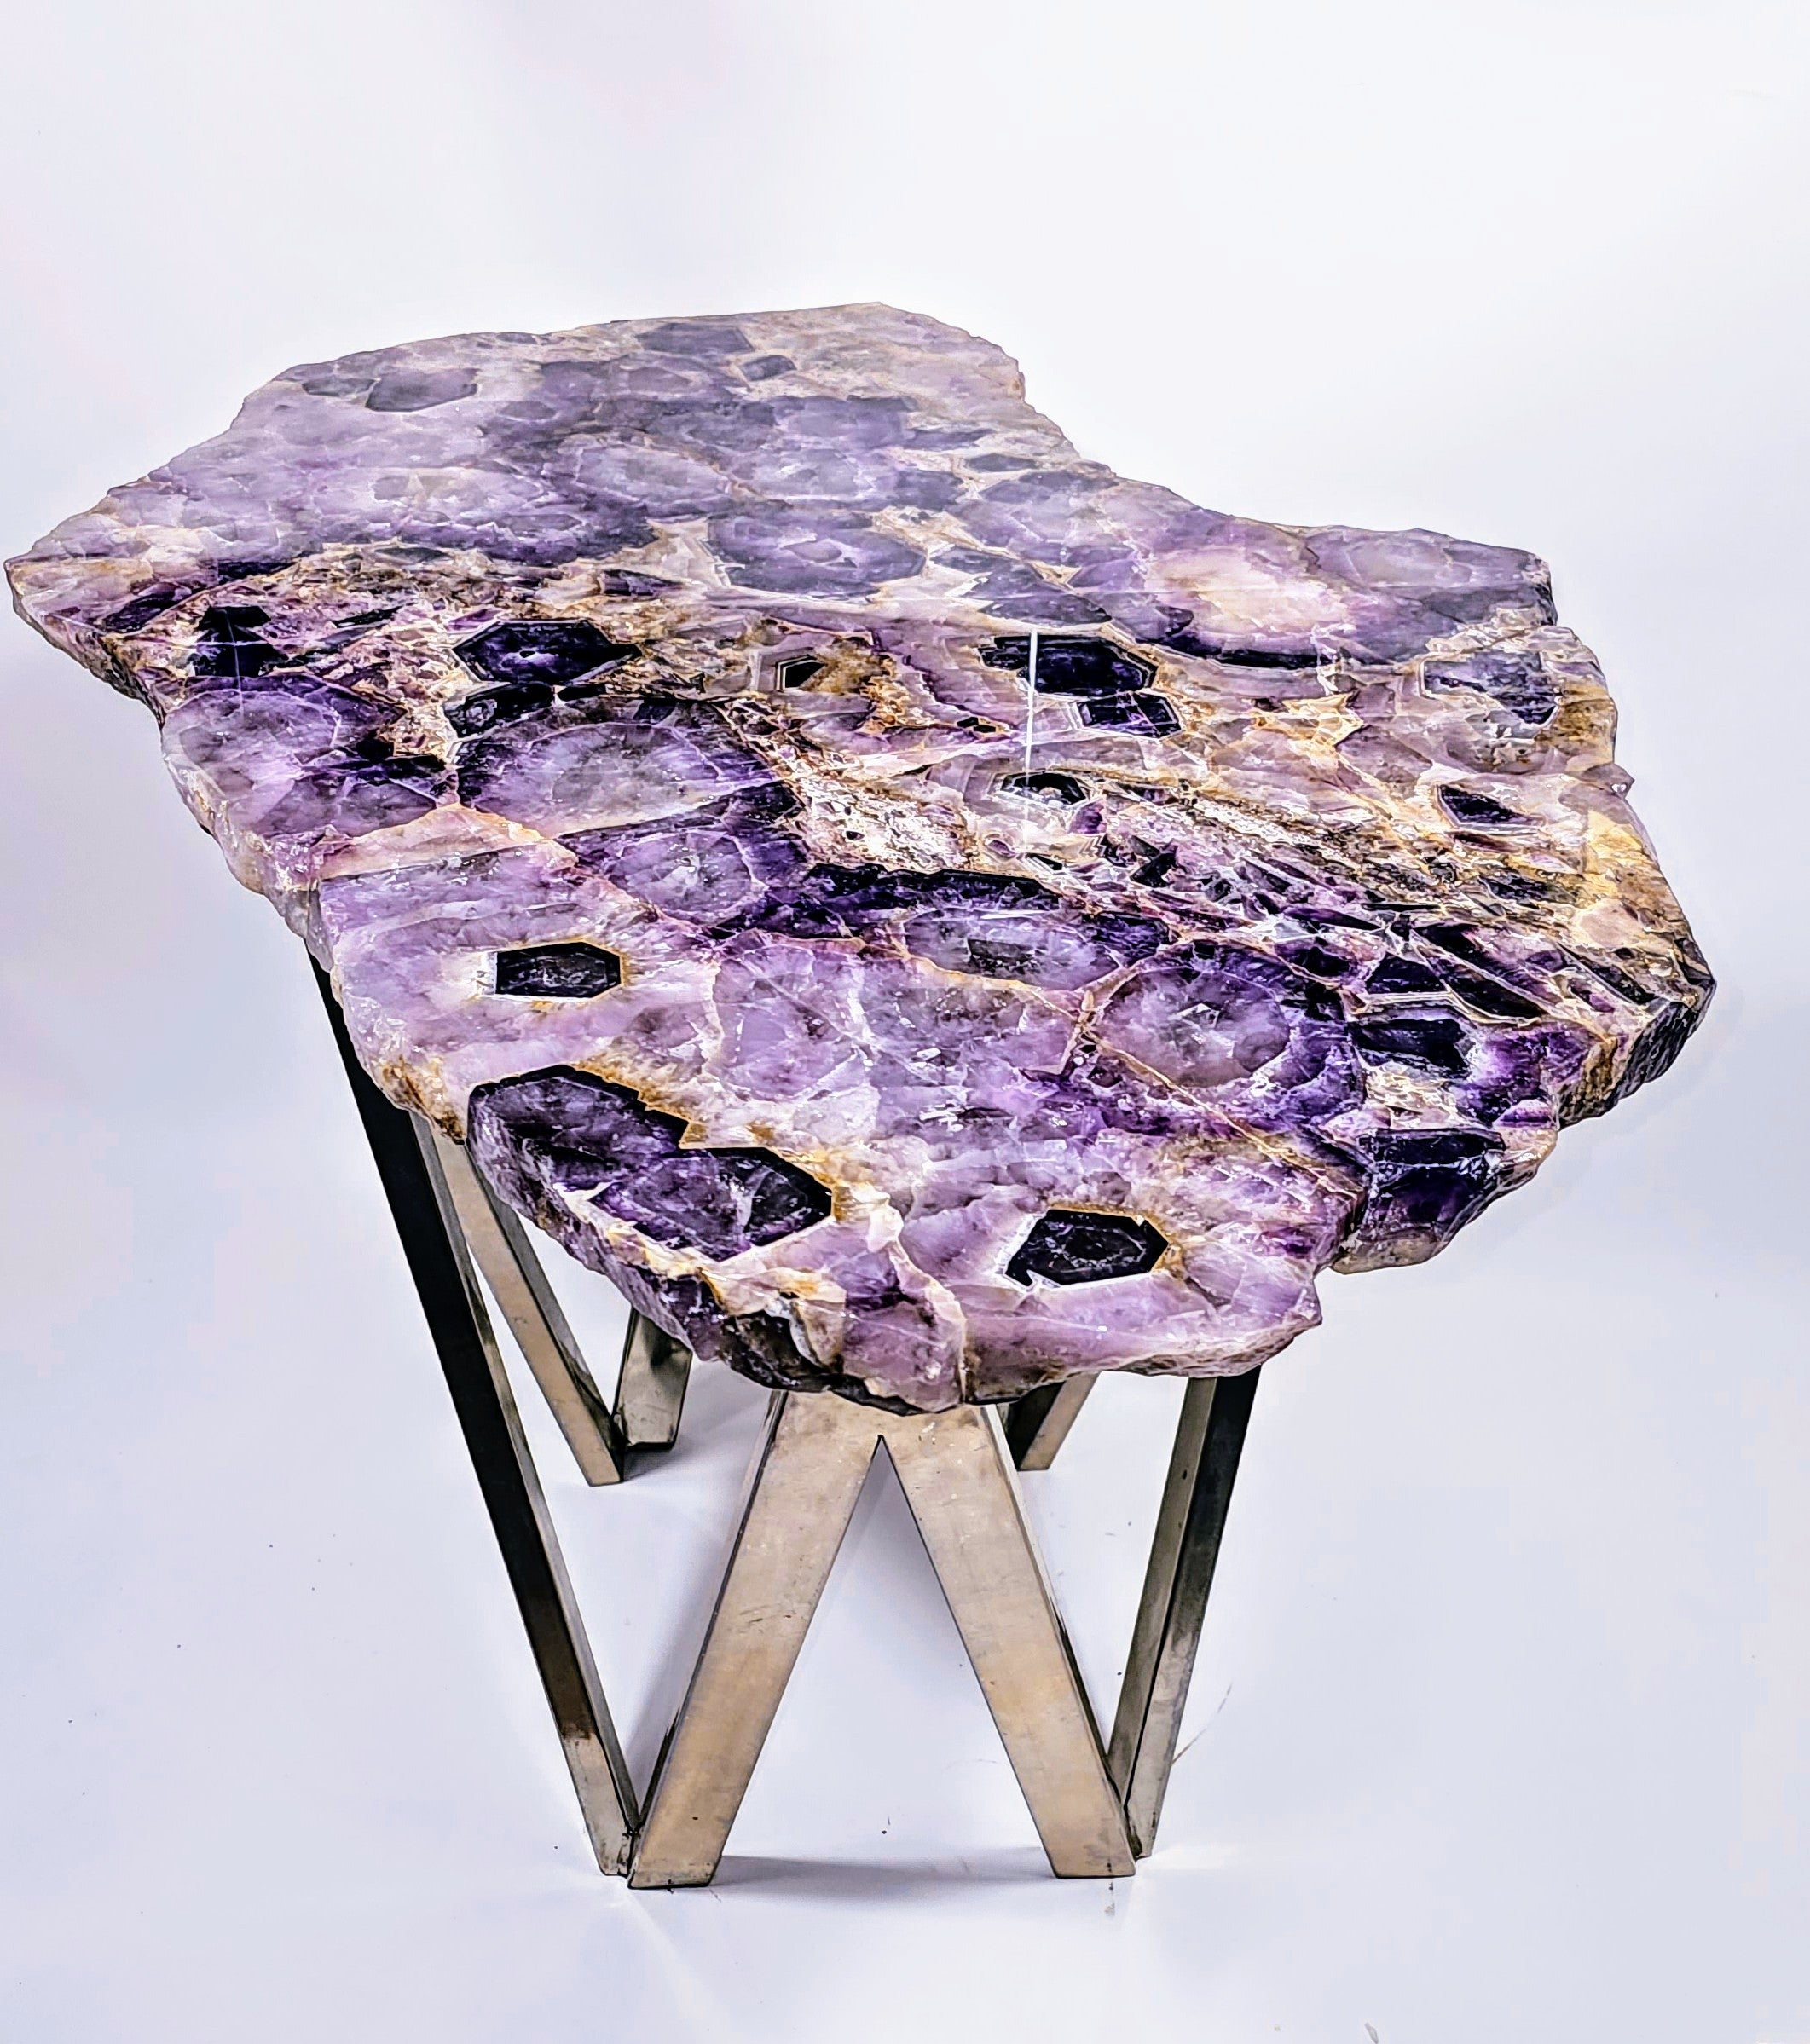 VERY RARE Siberian Amethyst Crystal Table [34" x 24" x 22/24" tall]